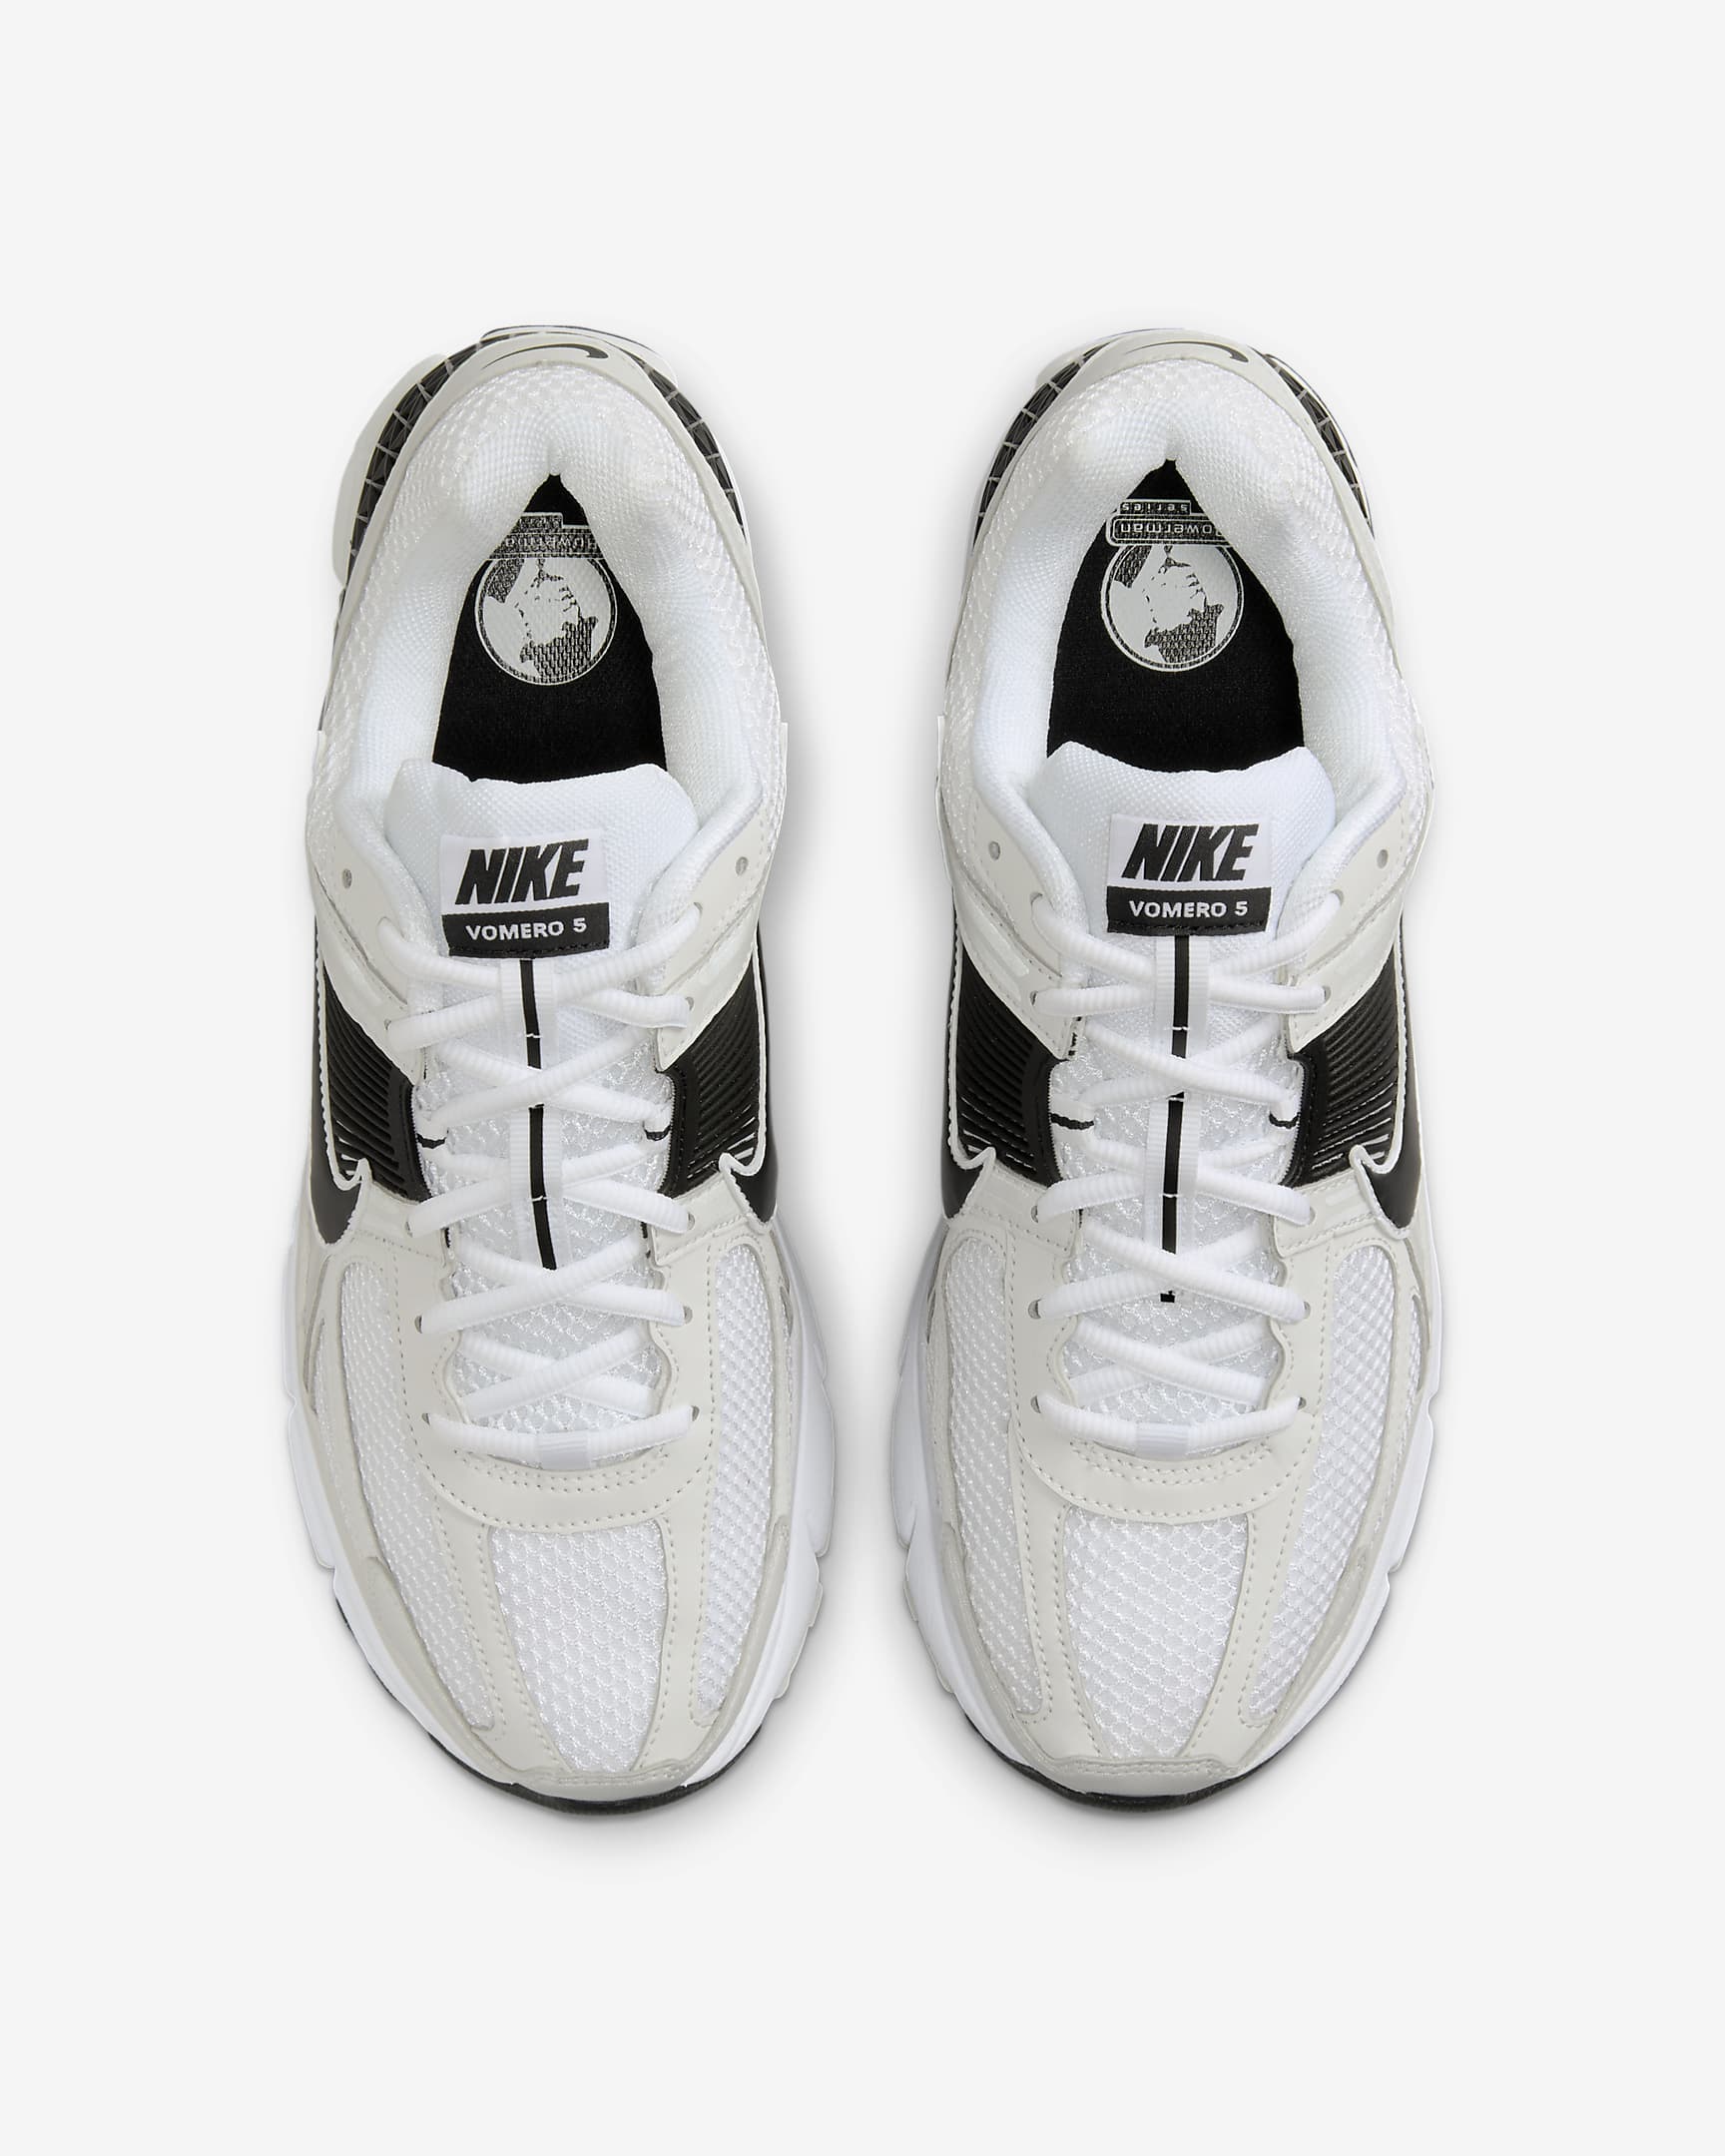 Nike Zoom Vomero 5 Herrenschuh - Weiß/Platinum Tint/Metallic Platinum/Schwarz